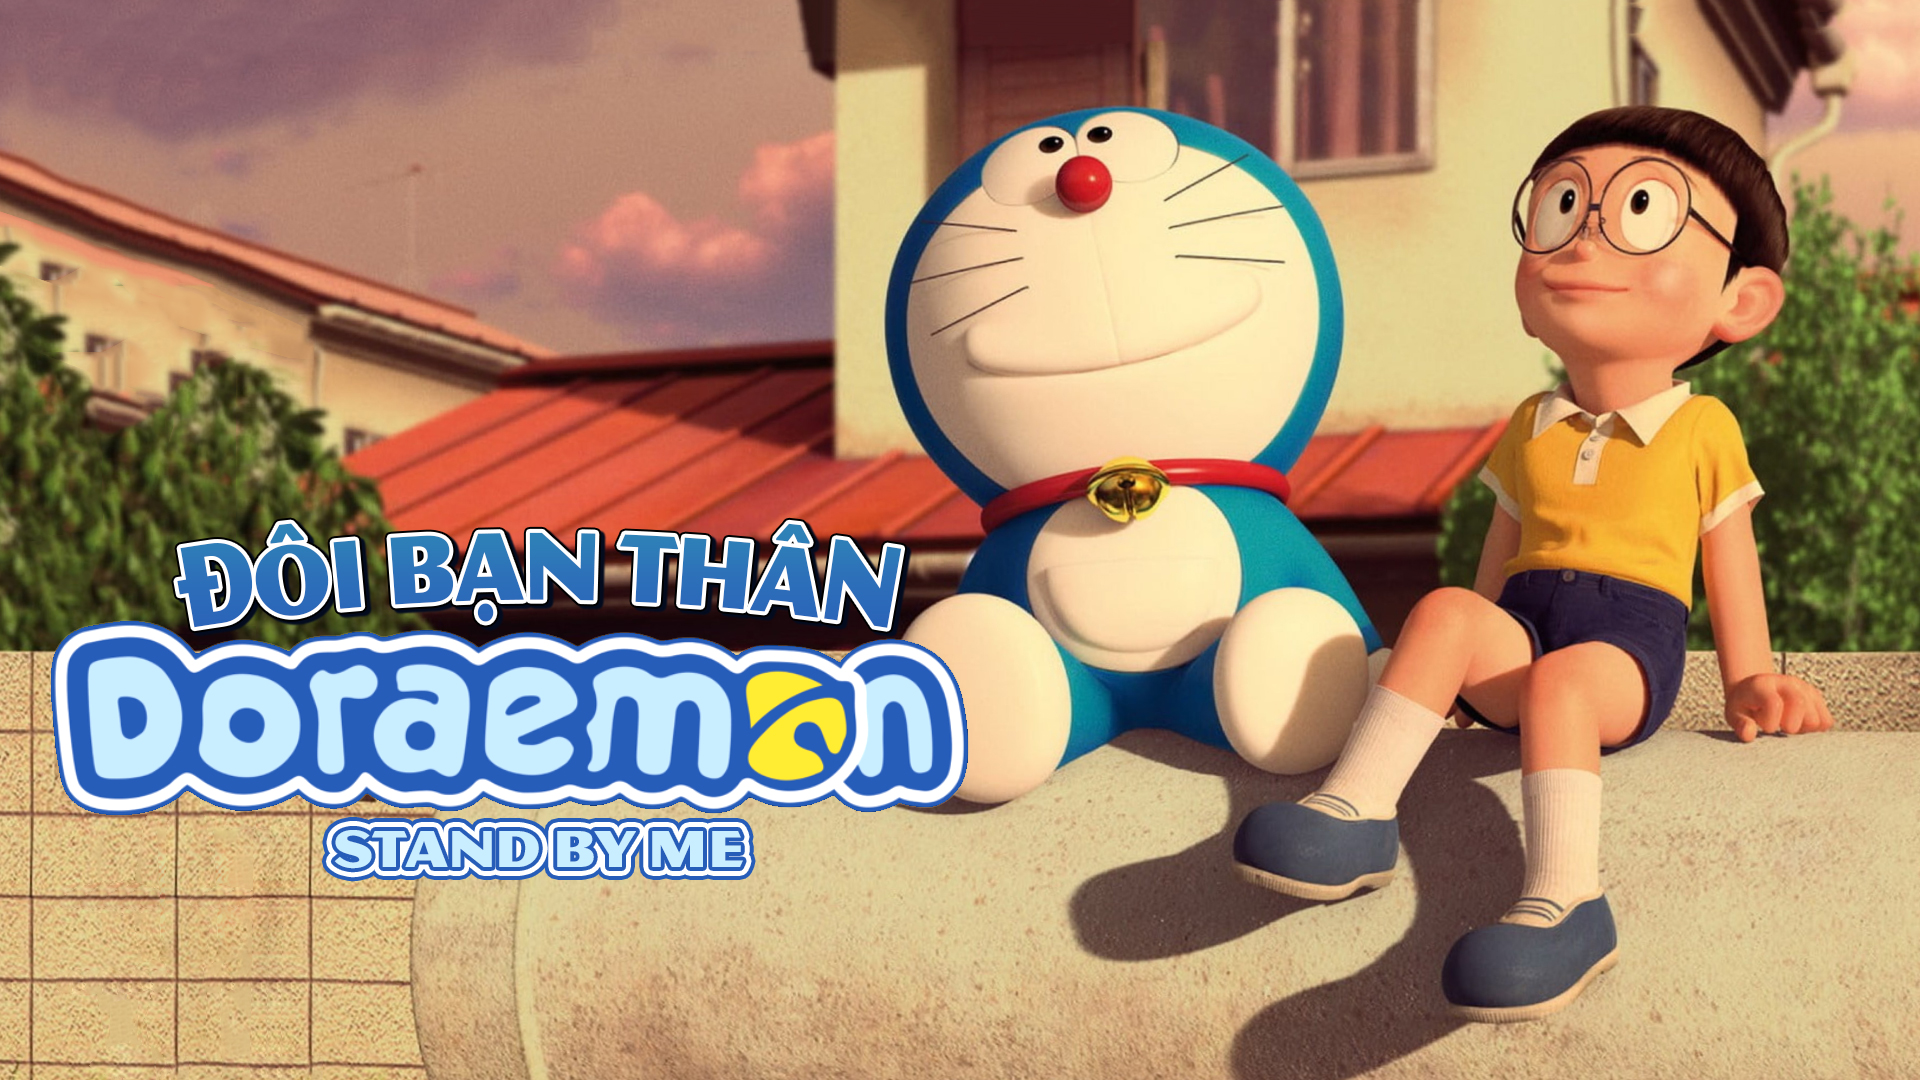 Đô Rê Mon không chỉ là một con robot đáng yêu mà còn là bạn thân của rất nhiều thế hệ trẻ. Với dịch vụ VieON, bạn có thể thưởng thức các tập phim Doraemon đầy cảm xúc và kỷ niệm bất tận. Hãy xem những hình ảnh liên quan đến Đô Rê Mon để cùng tái hợp và hồi tưởng kỷ niệm nhé!